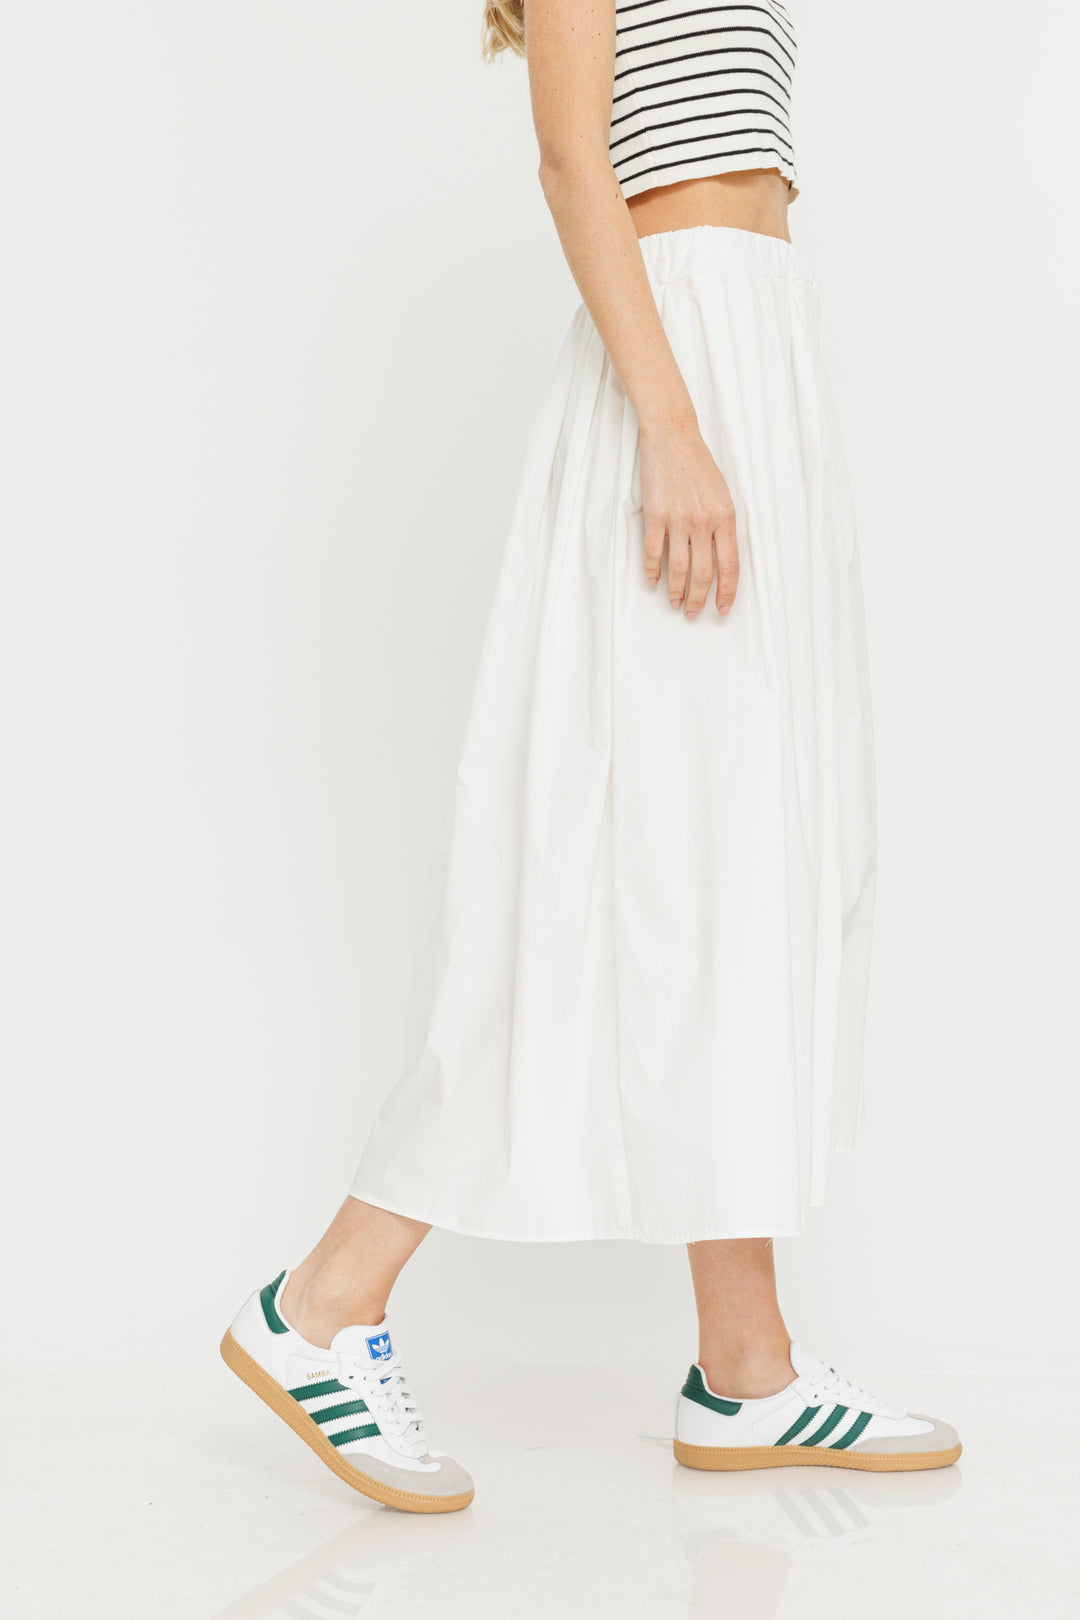 חצאית קפלים A Line בצבע לבן